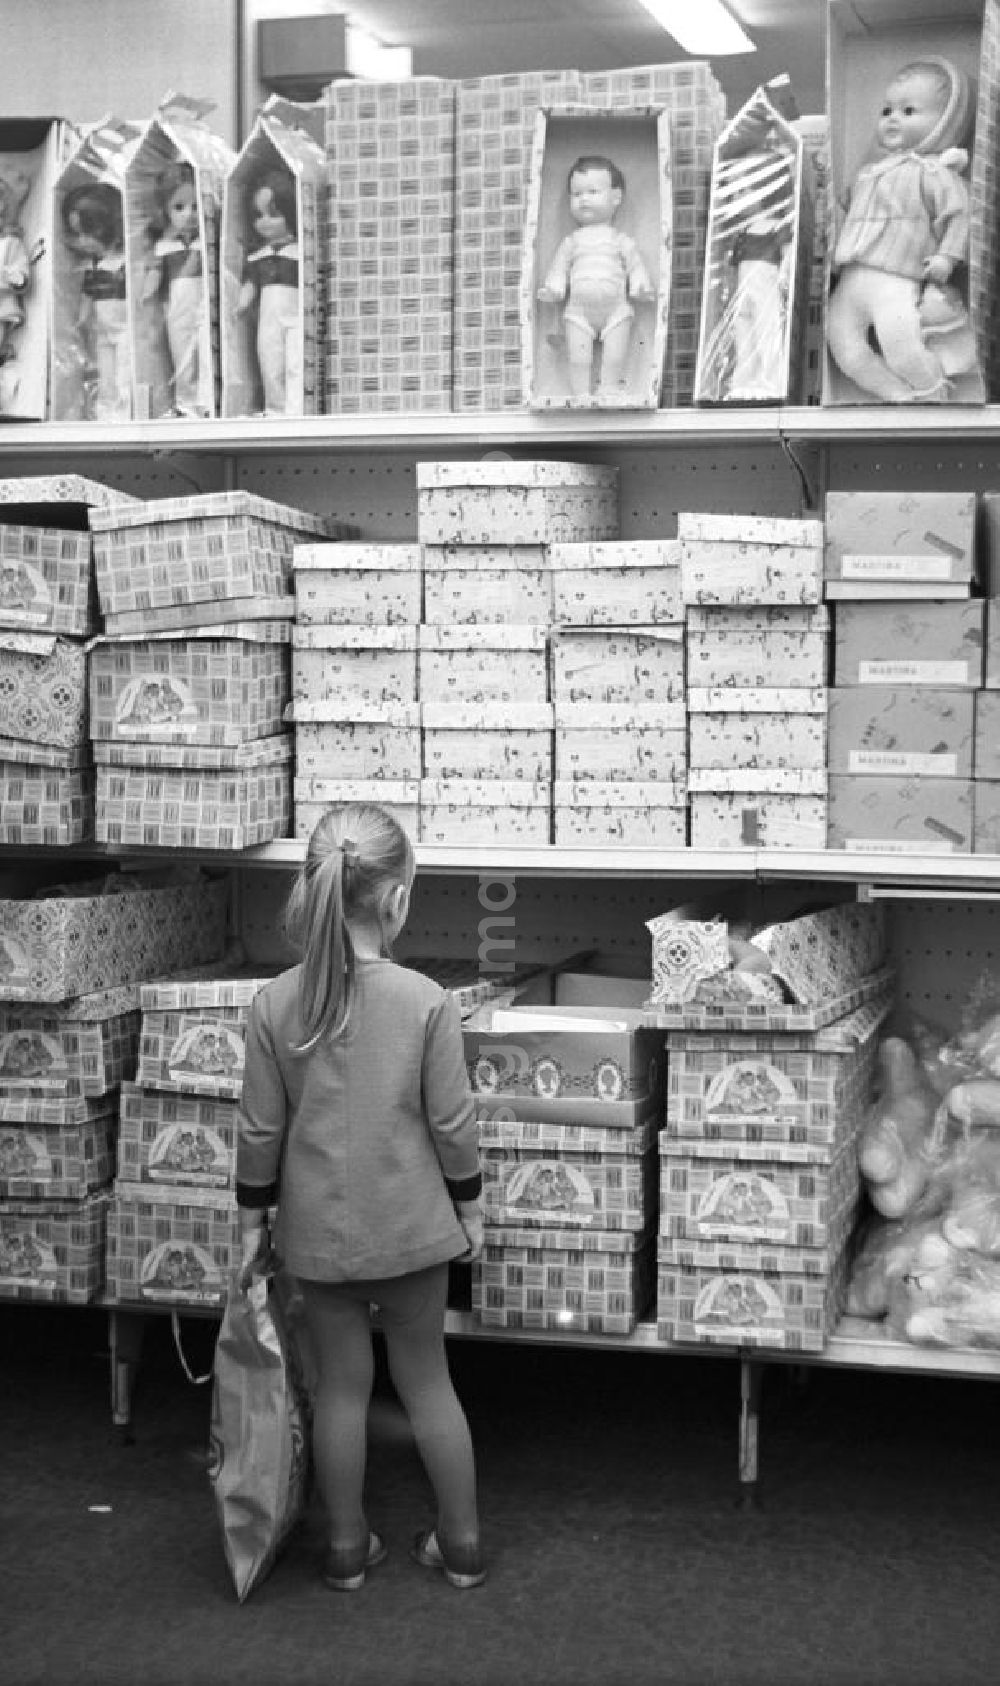 GDR picture archive: Berlin - Ob Mutti die mir kauft?, denkt dieses Mädchen vielleicht, das in der Spielwarenabteilung im Centrum Warenhaus am Alex in Berlin vor einem Regal mit Puppen steht und in einen geöffneten Karton schaut.